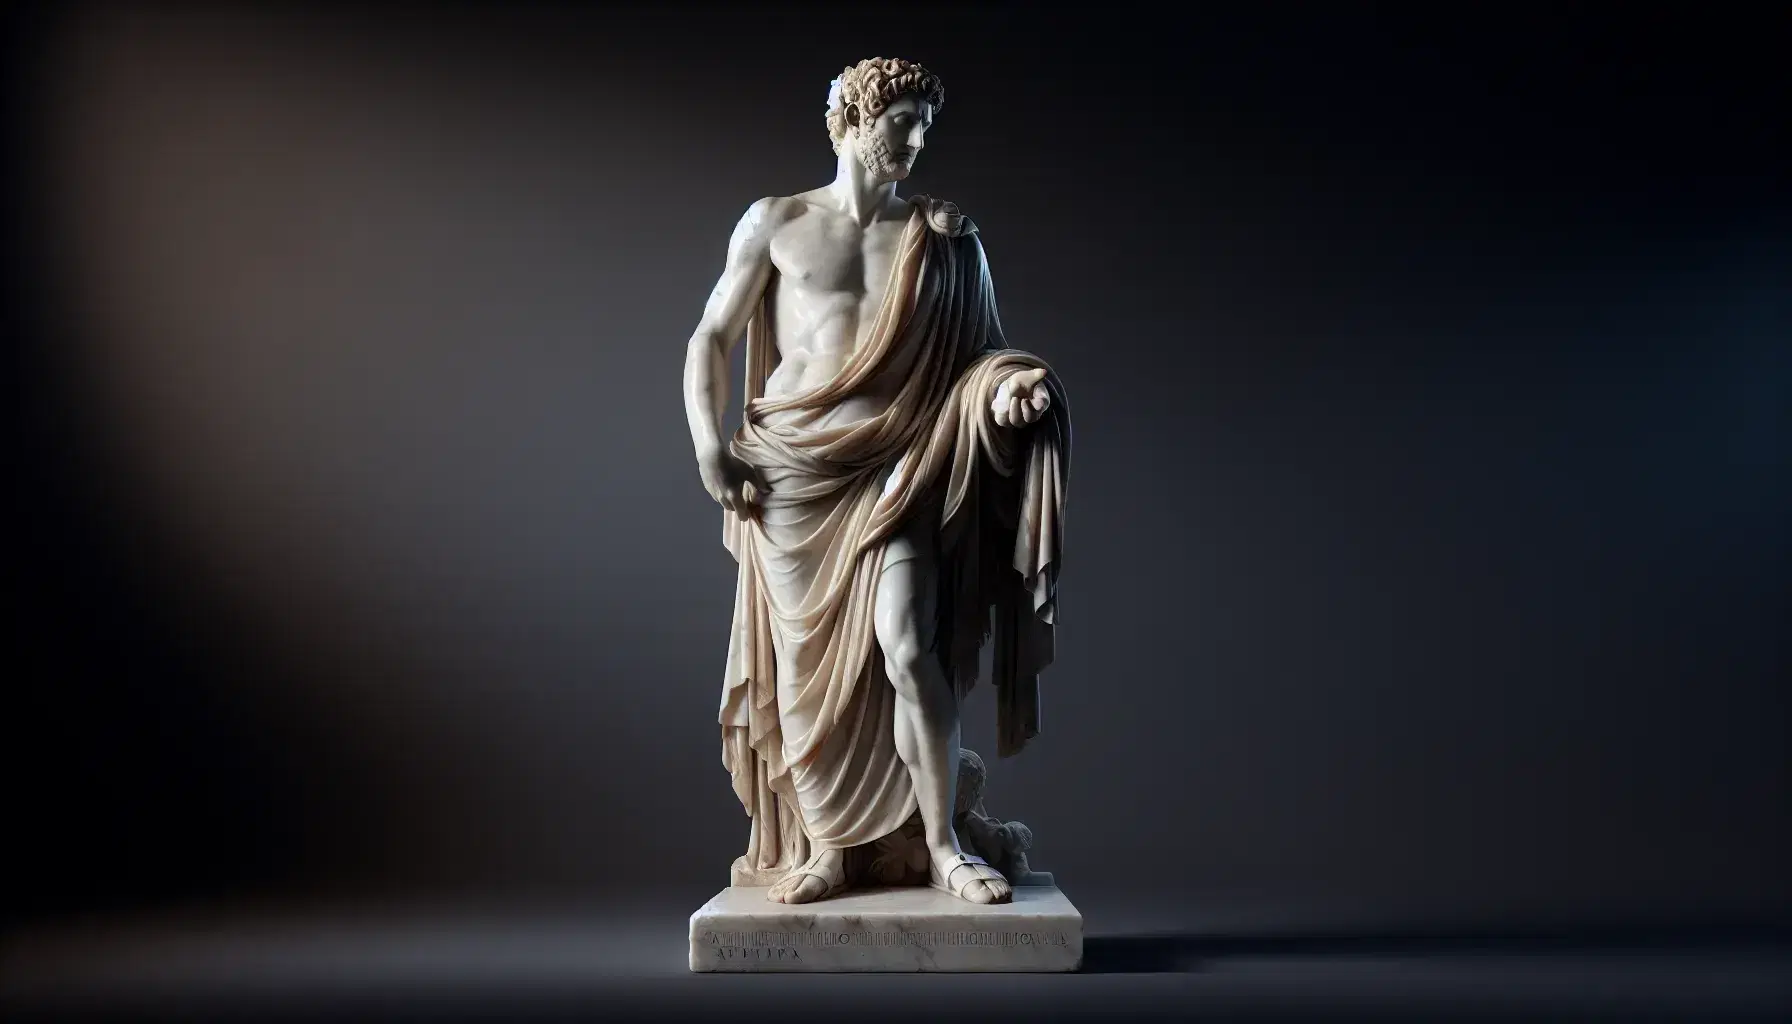 Statua in marmo di figura romana con toga, in piedi, gesto eloquente, senza iscrizioni, in ambiente neutro che suggerisce un museo.